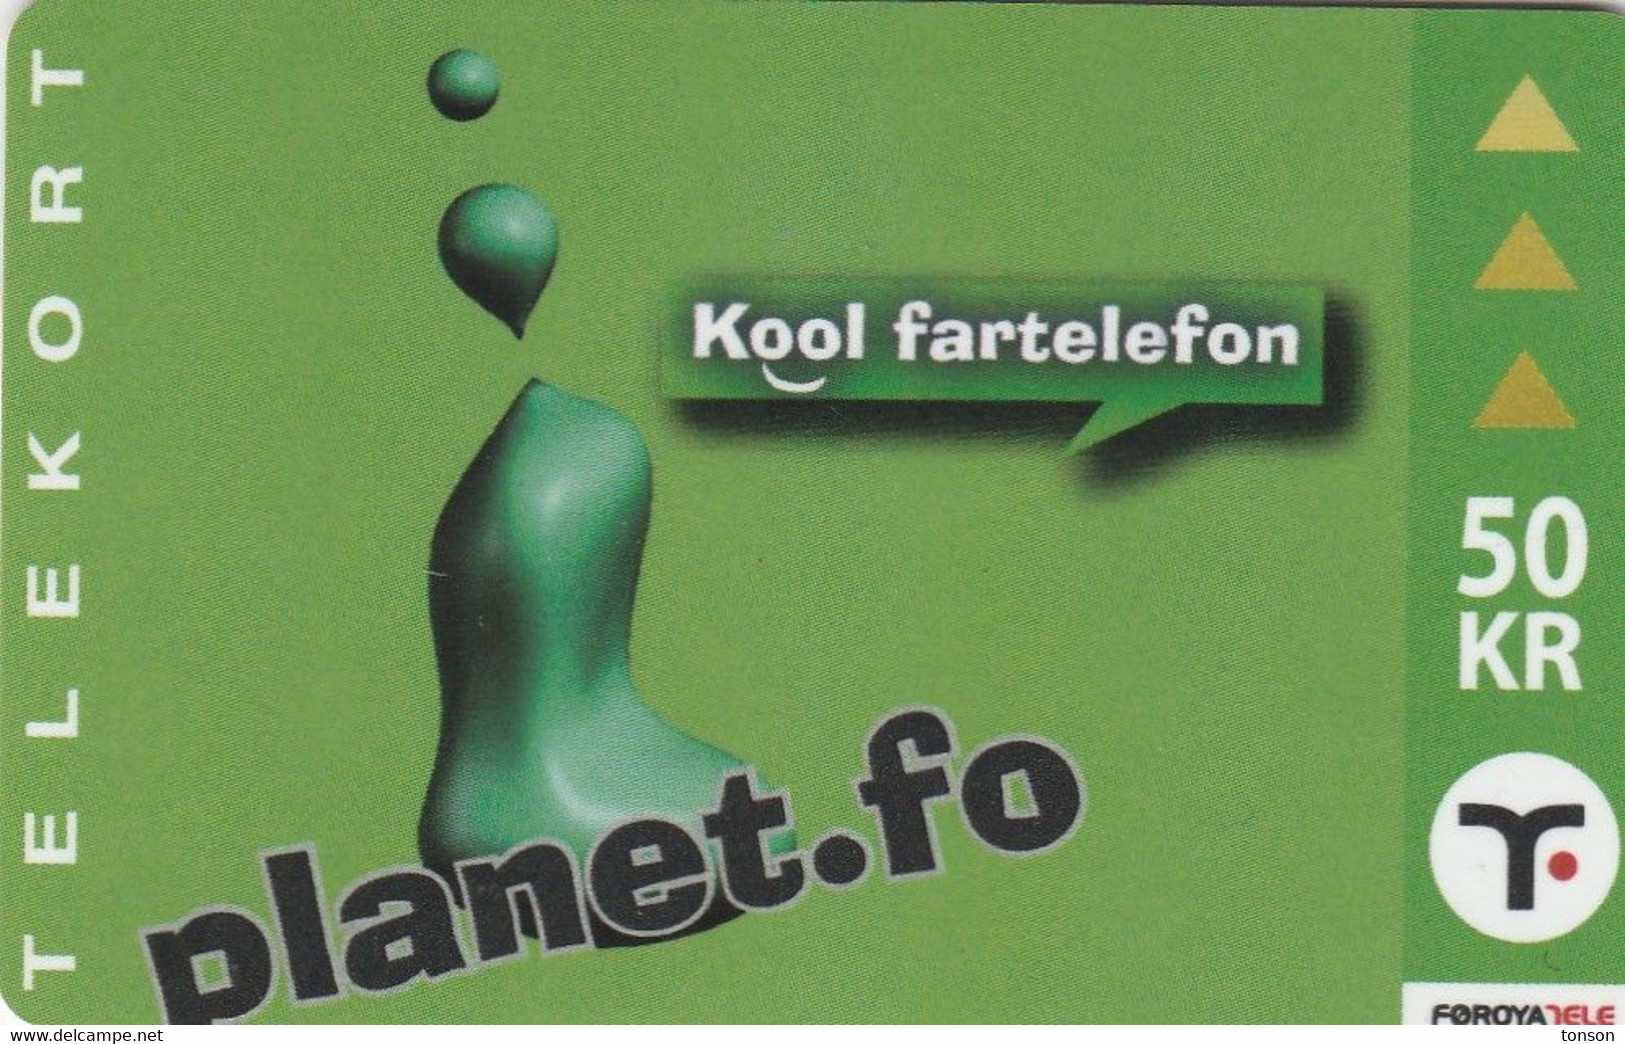 Faroe Islands, OR-003, 50 Kr ,  Planet.fo, Kool Fartelefon, 2 Scans. - Faroe Islands